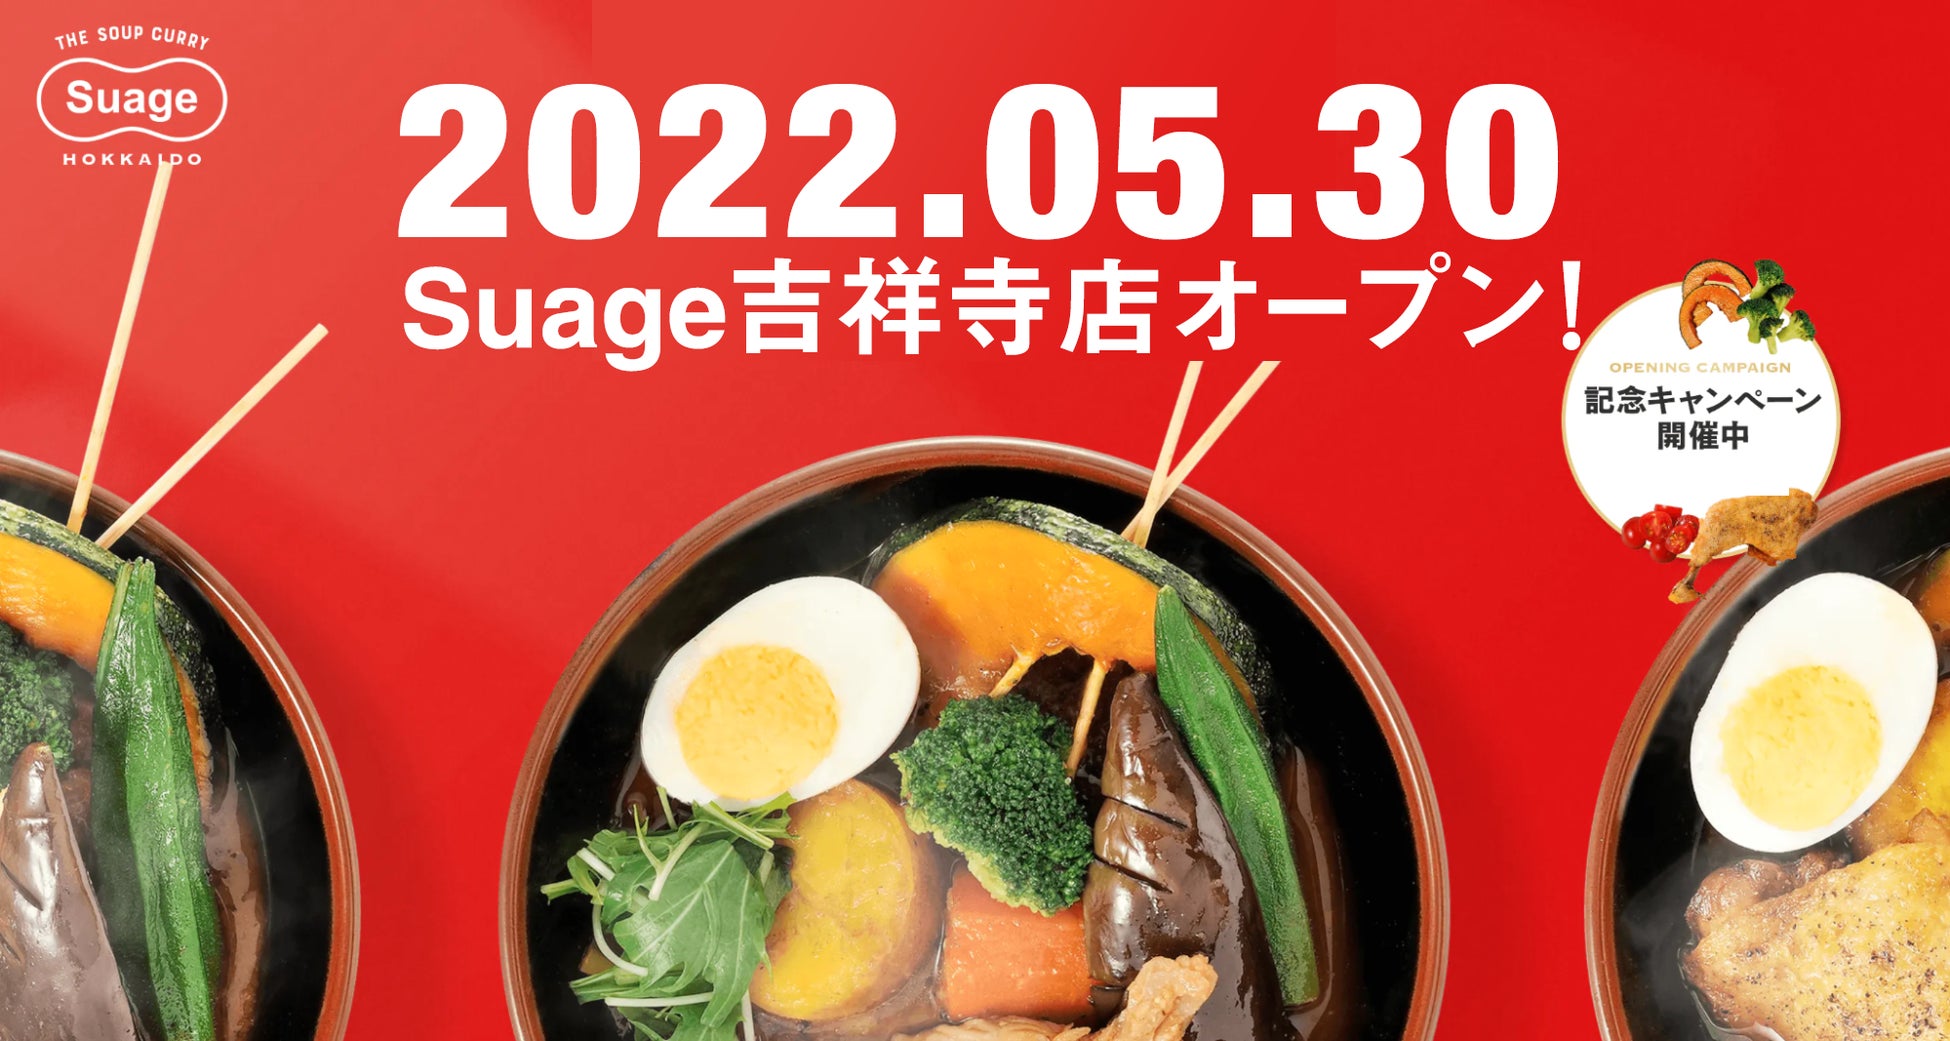 ママに余裕を届けるブランド「yoyu（ヨユー）」が「Food Meetup 2022」に出展